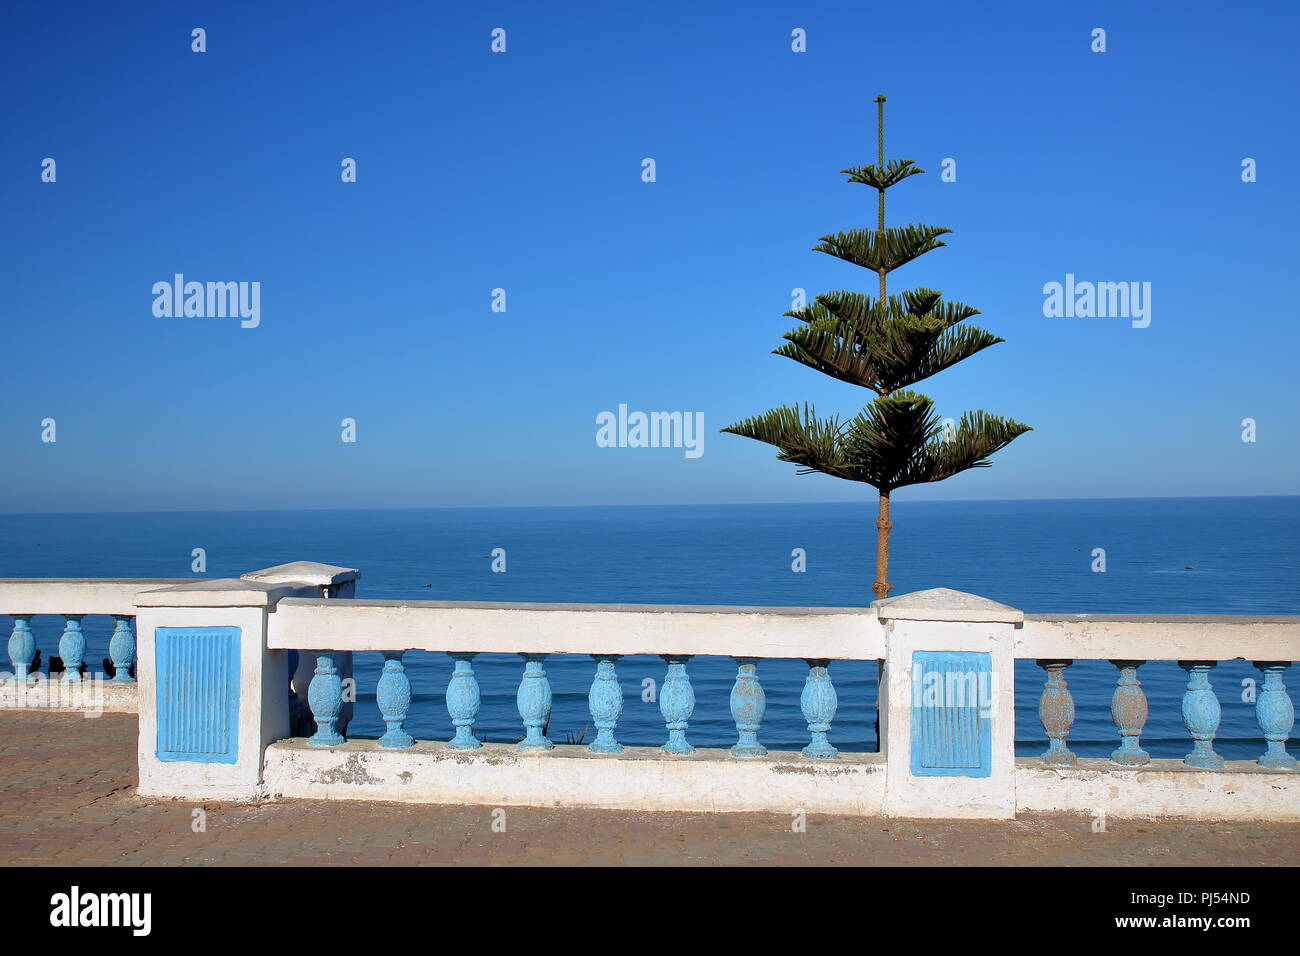 Paisaje con baja de pared blanco azul decorado con pequeñas columnas, un árbol verde, mar (Océano), lleno de calma, nadie, cielo azul, Marruecos. Foto de stock